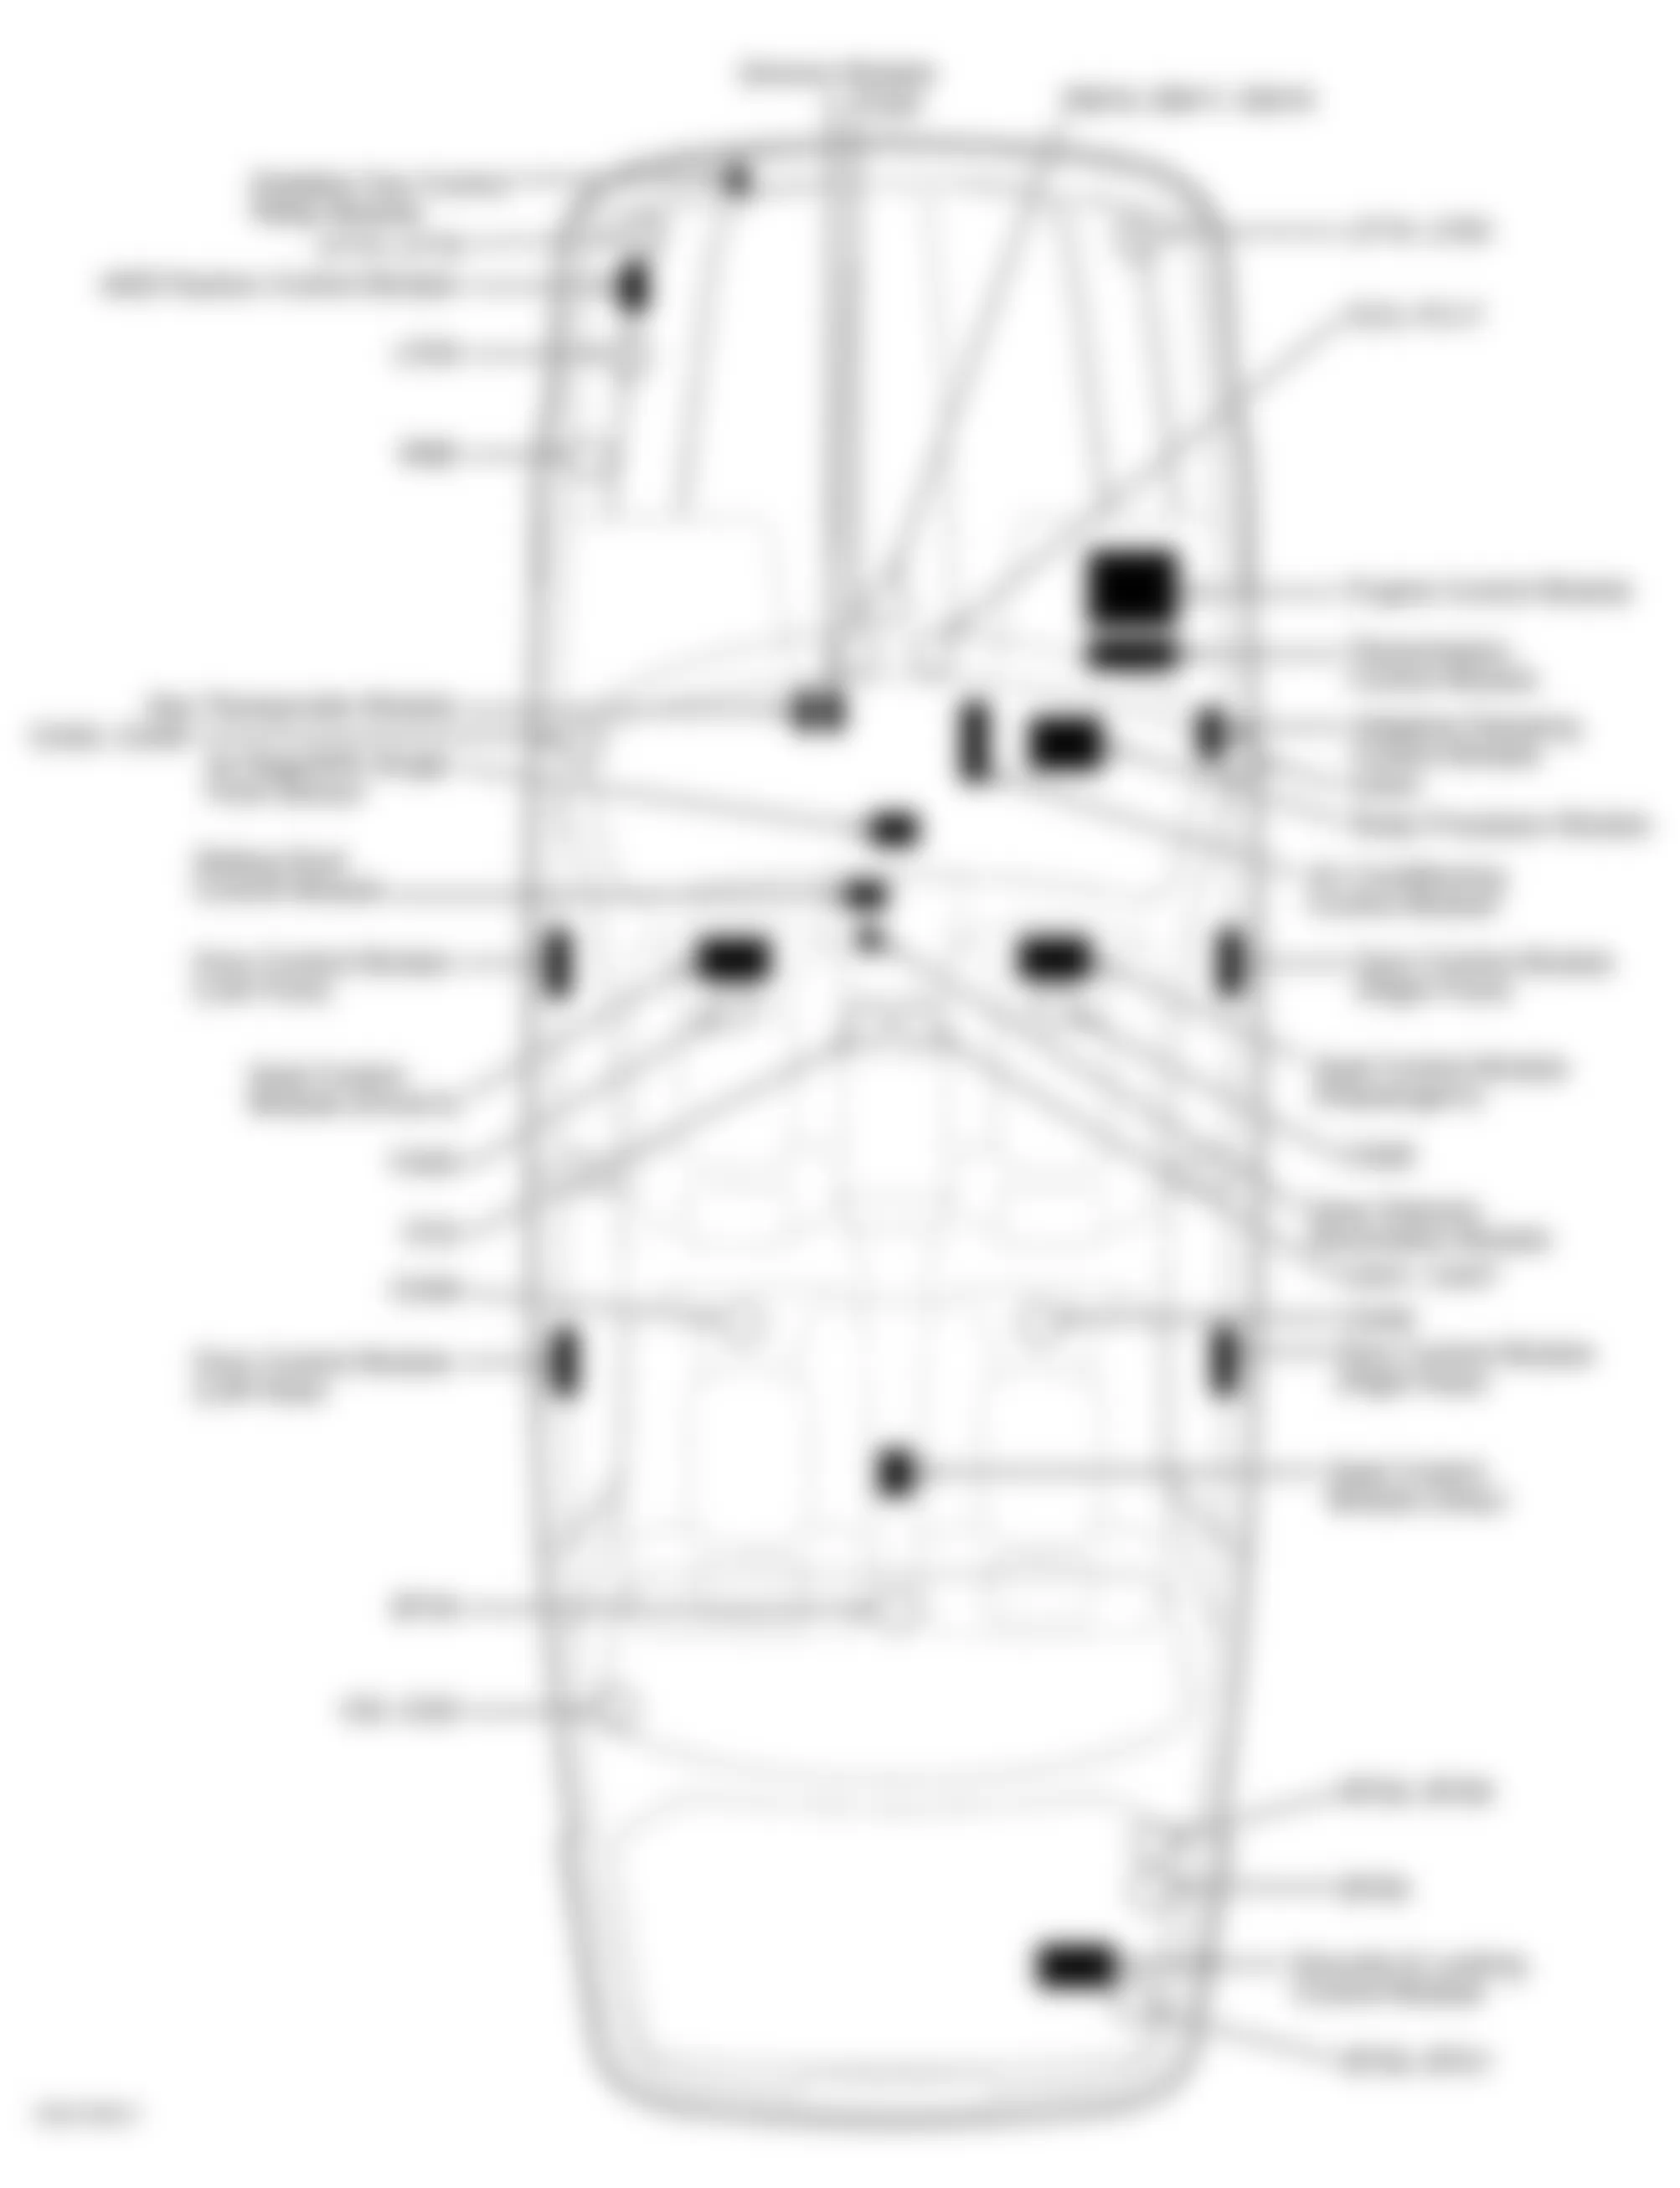 Jaguar XJ8 1999 - Component Locations -  Vehicle Overview